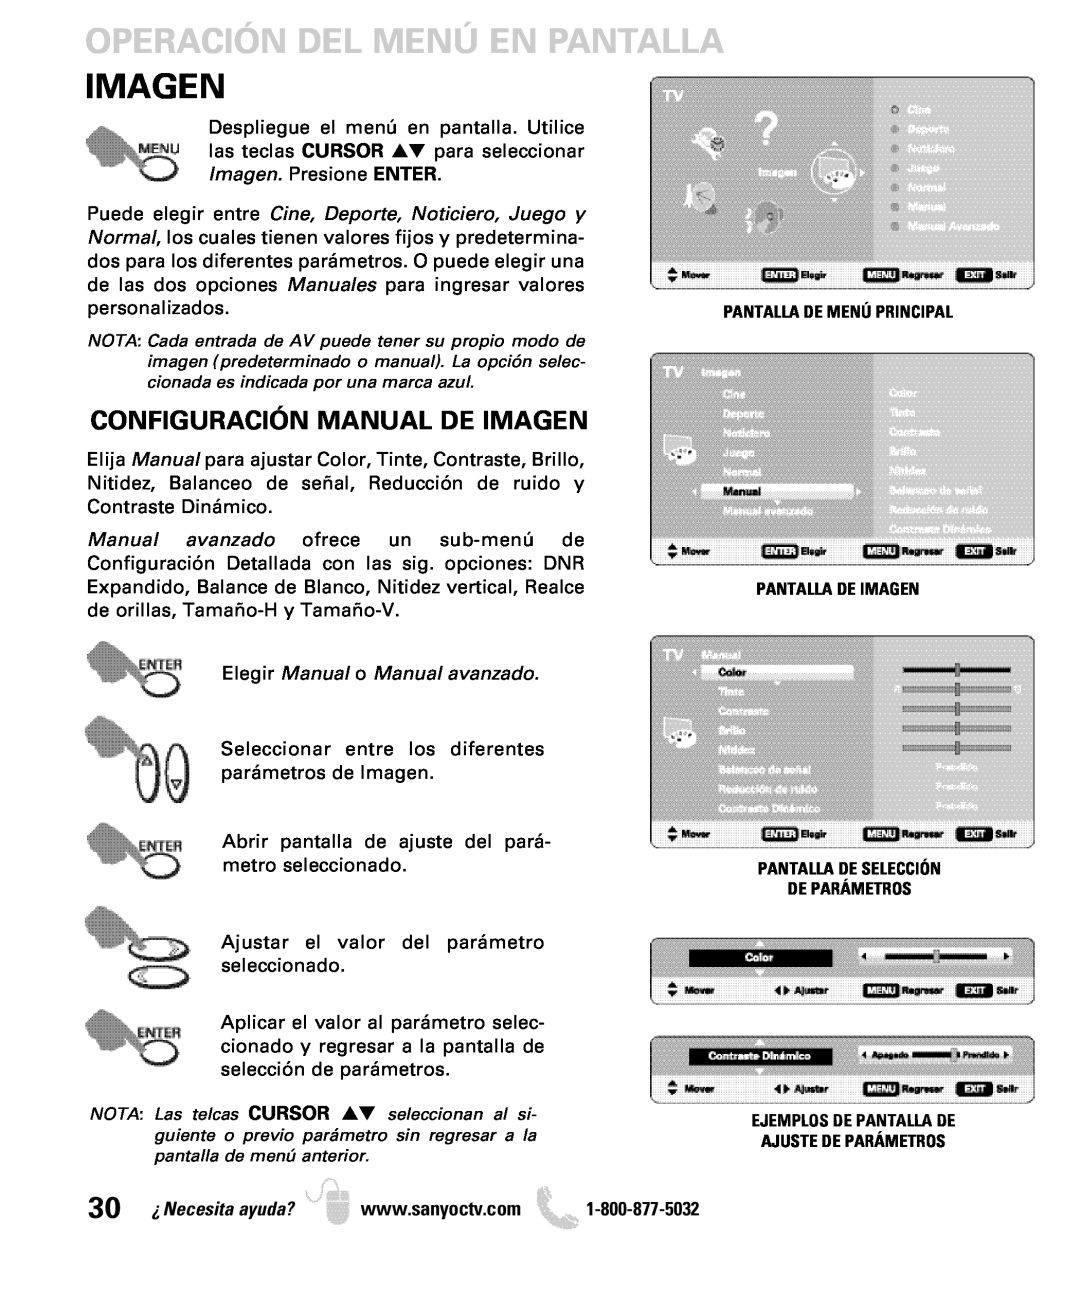 Sanyo DP26649, DP19649 owner manual Configuración Manual De Imagen, personalizados, Elegir Manual o Manual avanzado 